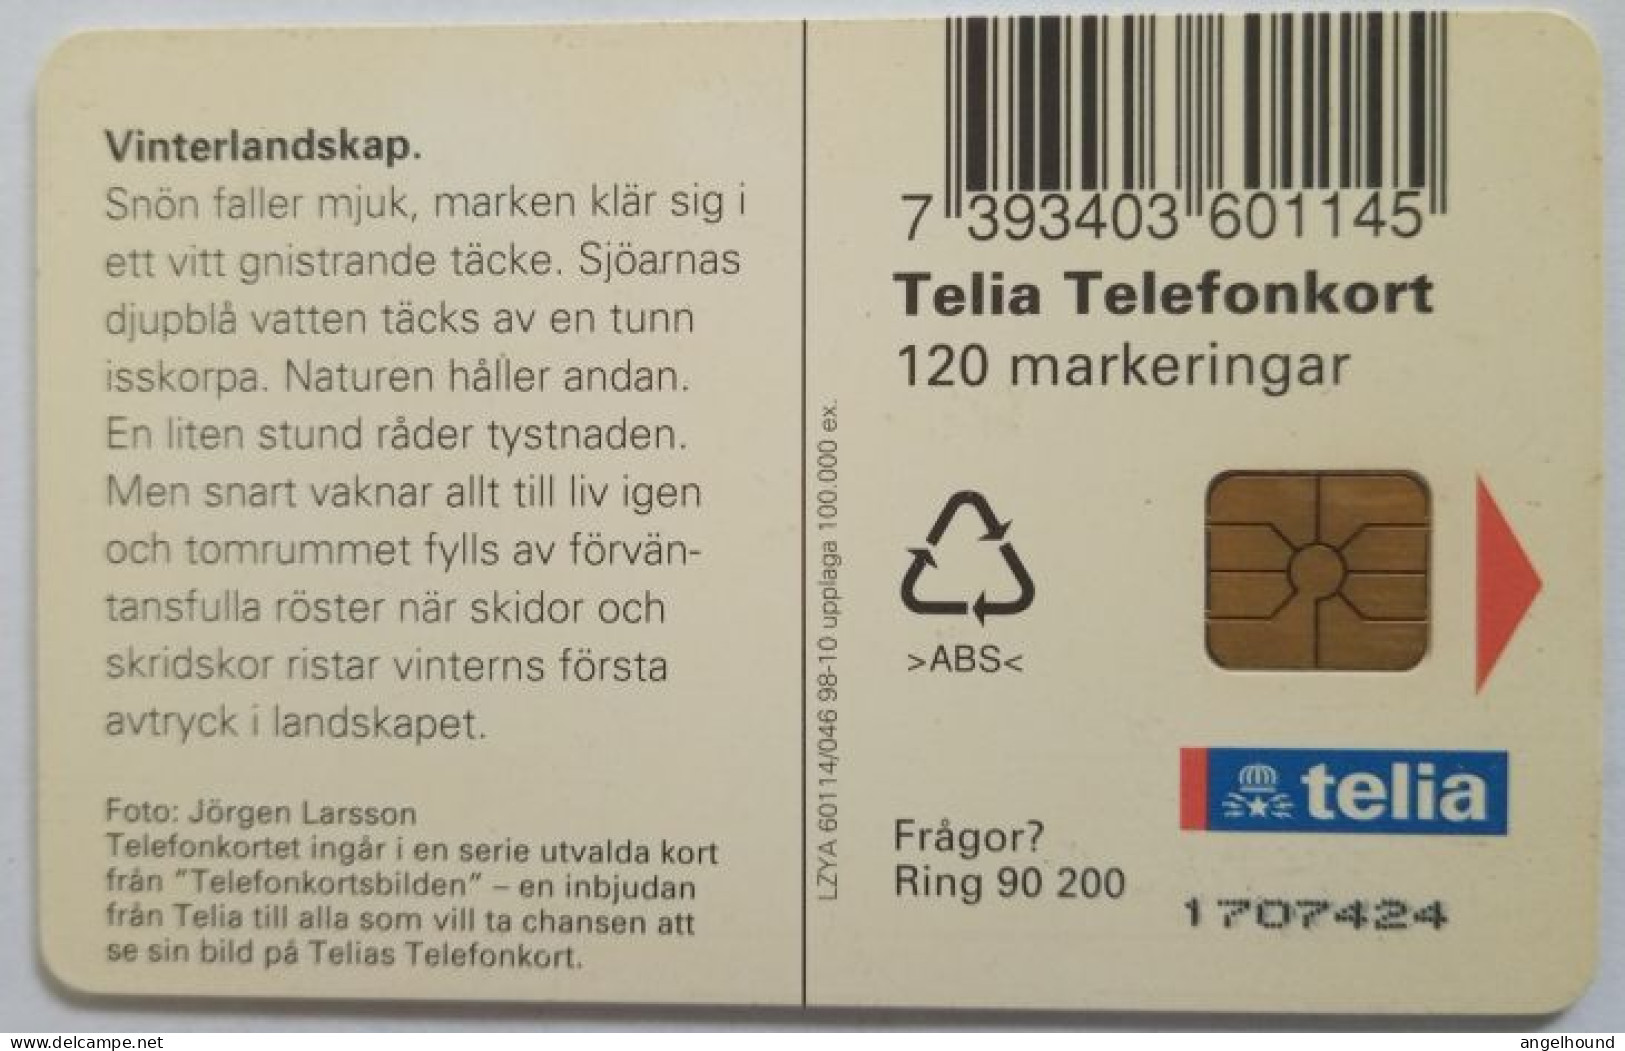 Sweden 120Mk. Chip Card - Lantern In A Snow - Svezia